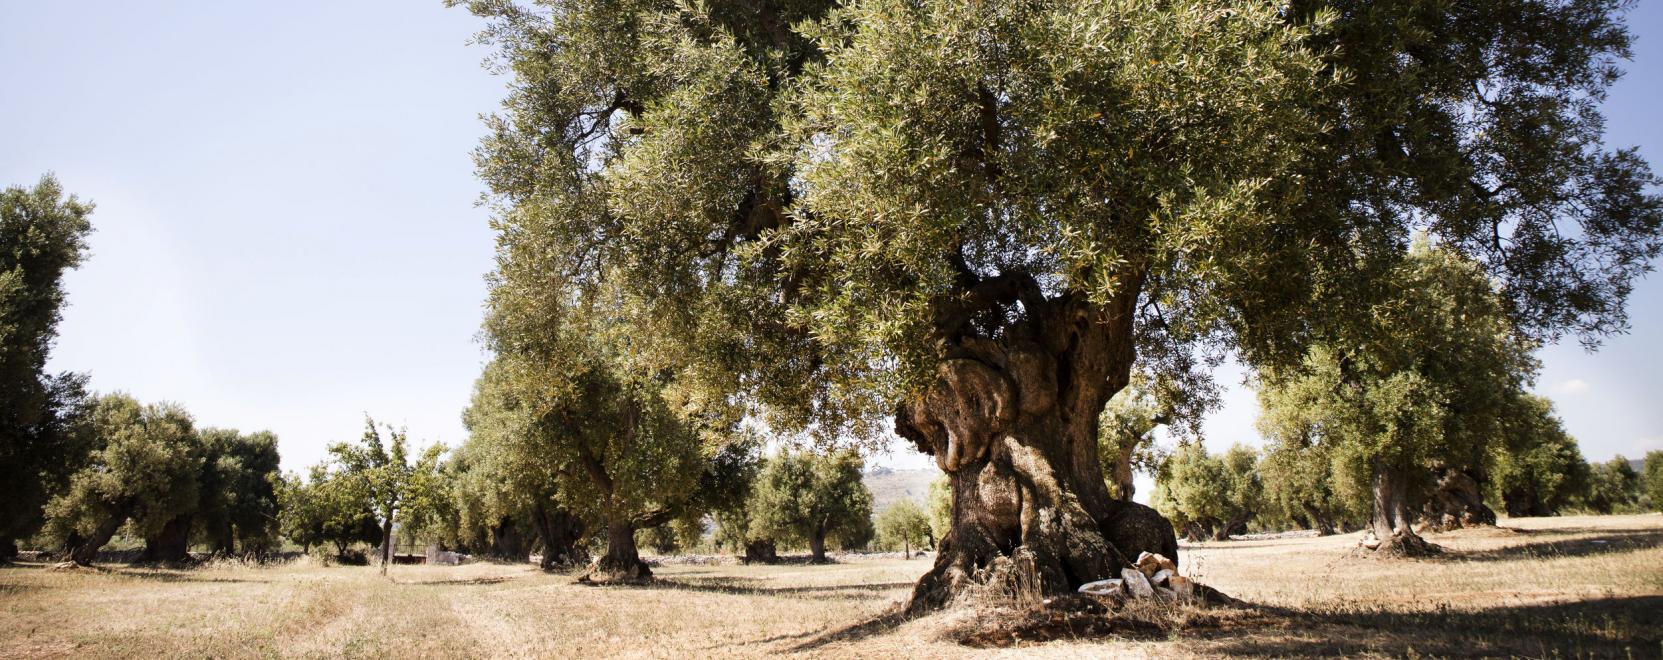 Drónok olajozhatják meg az olívatermelést